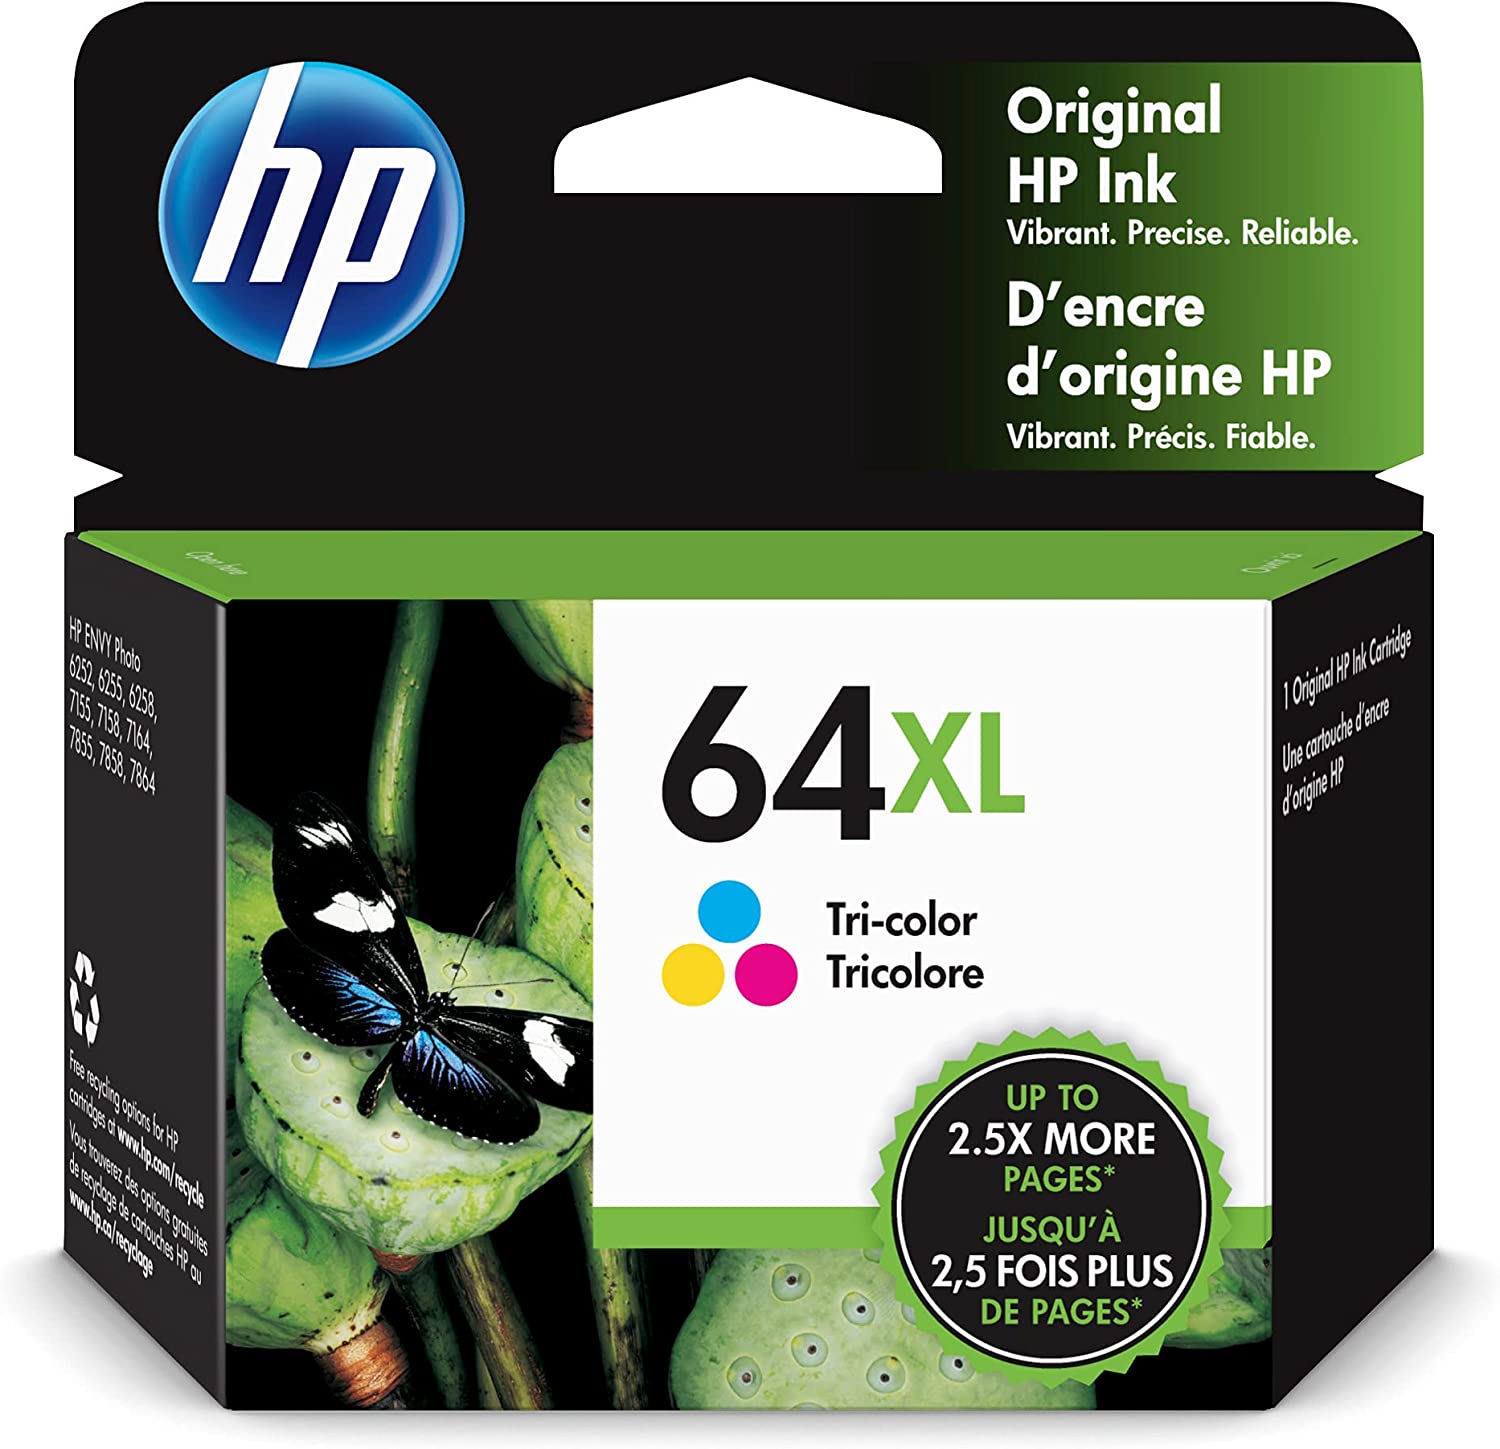 HP 64XL 3색 고수익 잉크 카트리지 | HP ENVY Enspire 7950e와 함께 작동; ENVY 사진 6200, 7100, 7800; 탱고 시리즈 | 인스턴트 잉크 적격 | N9J91AN